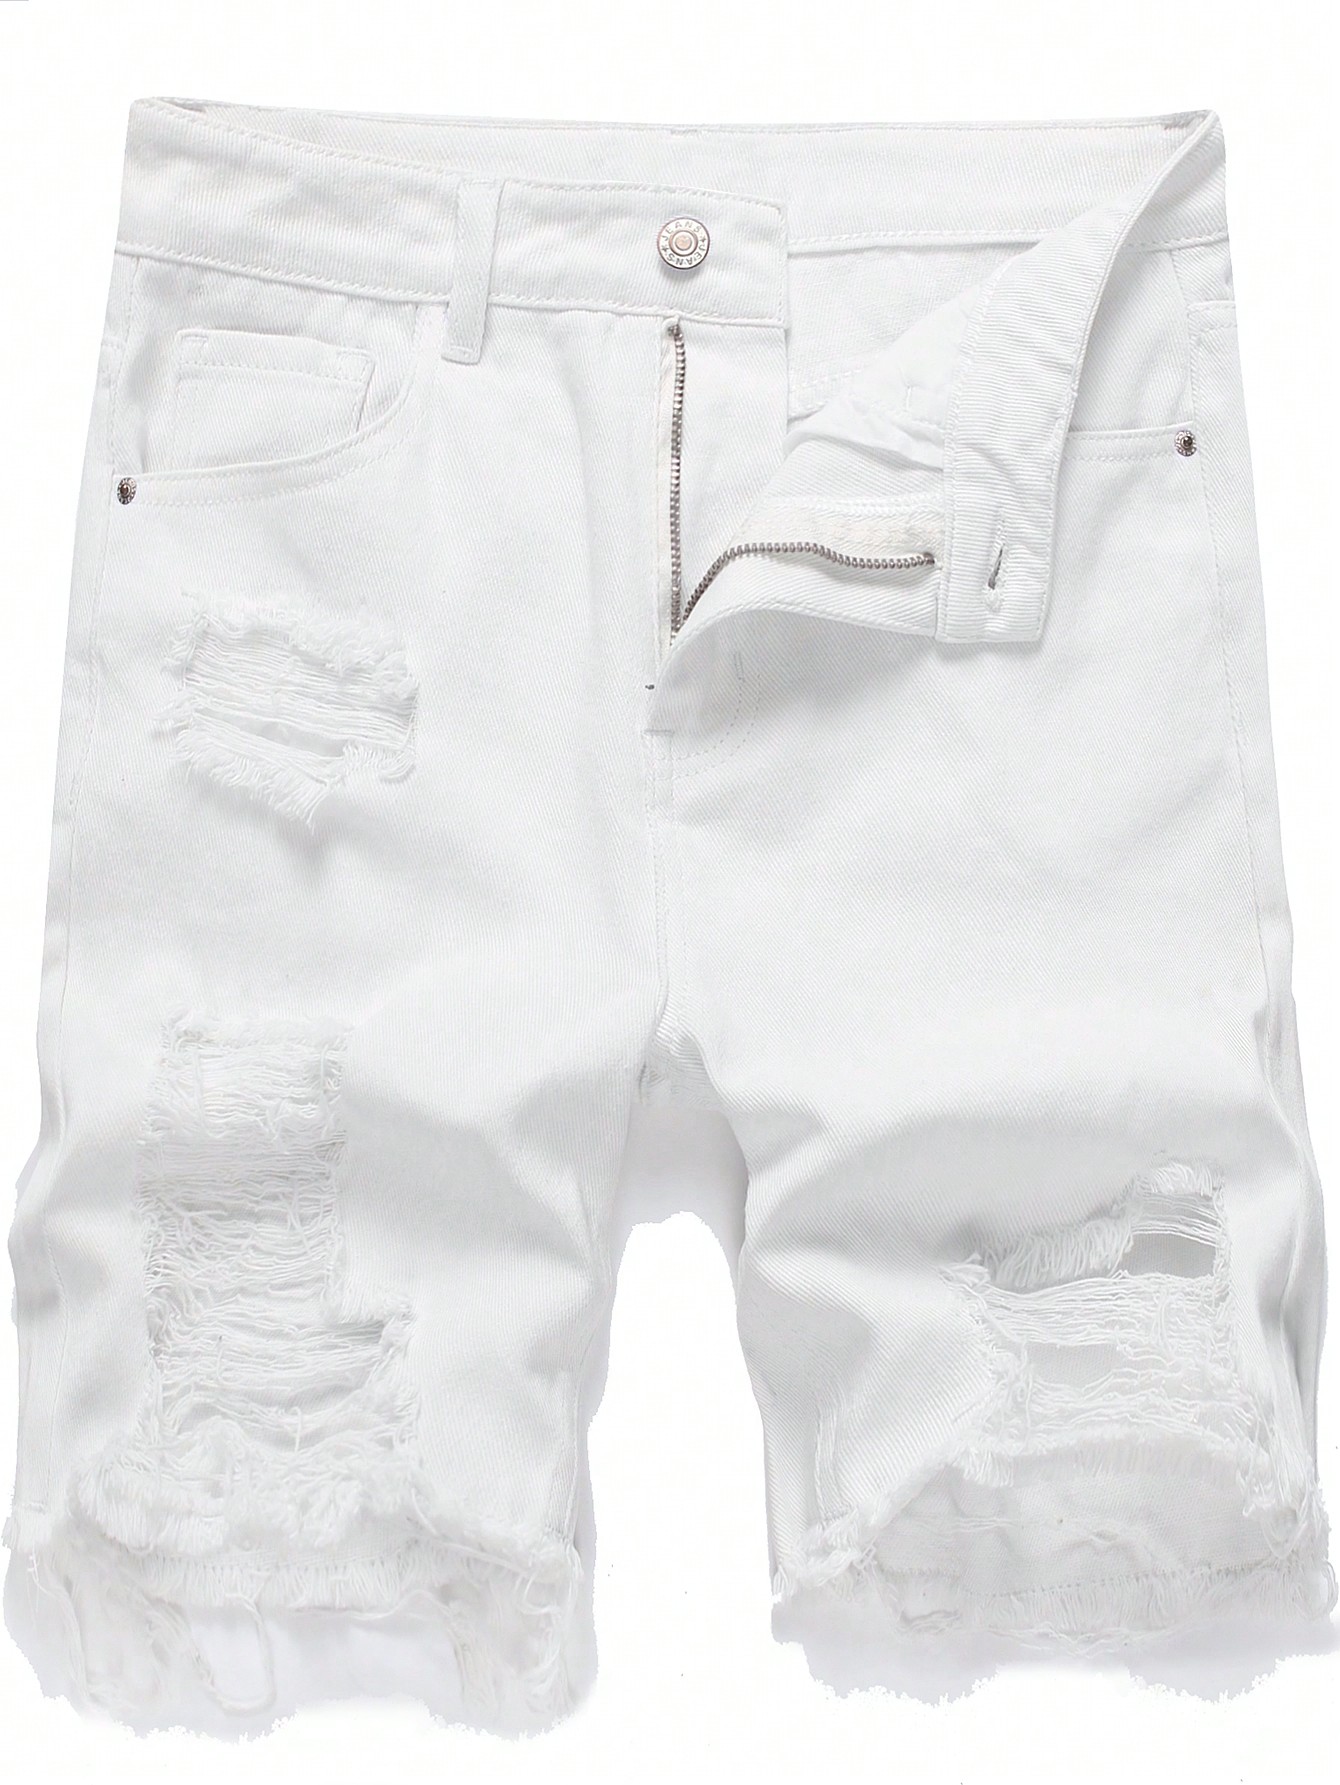 Мужские джинсовые шорты с потертостями и дырками, белый фото